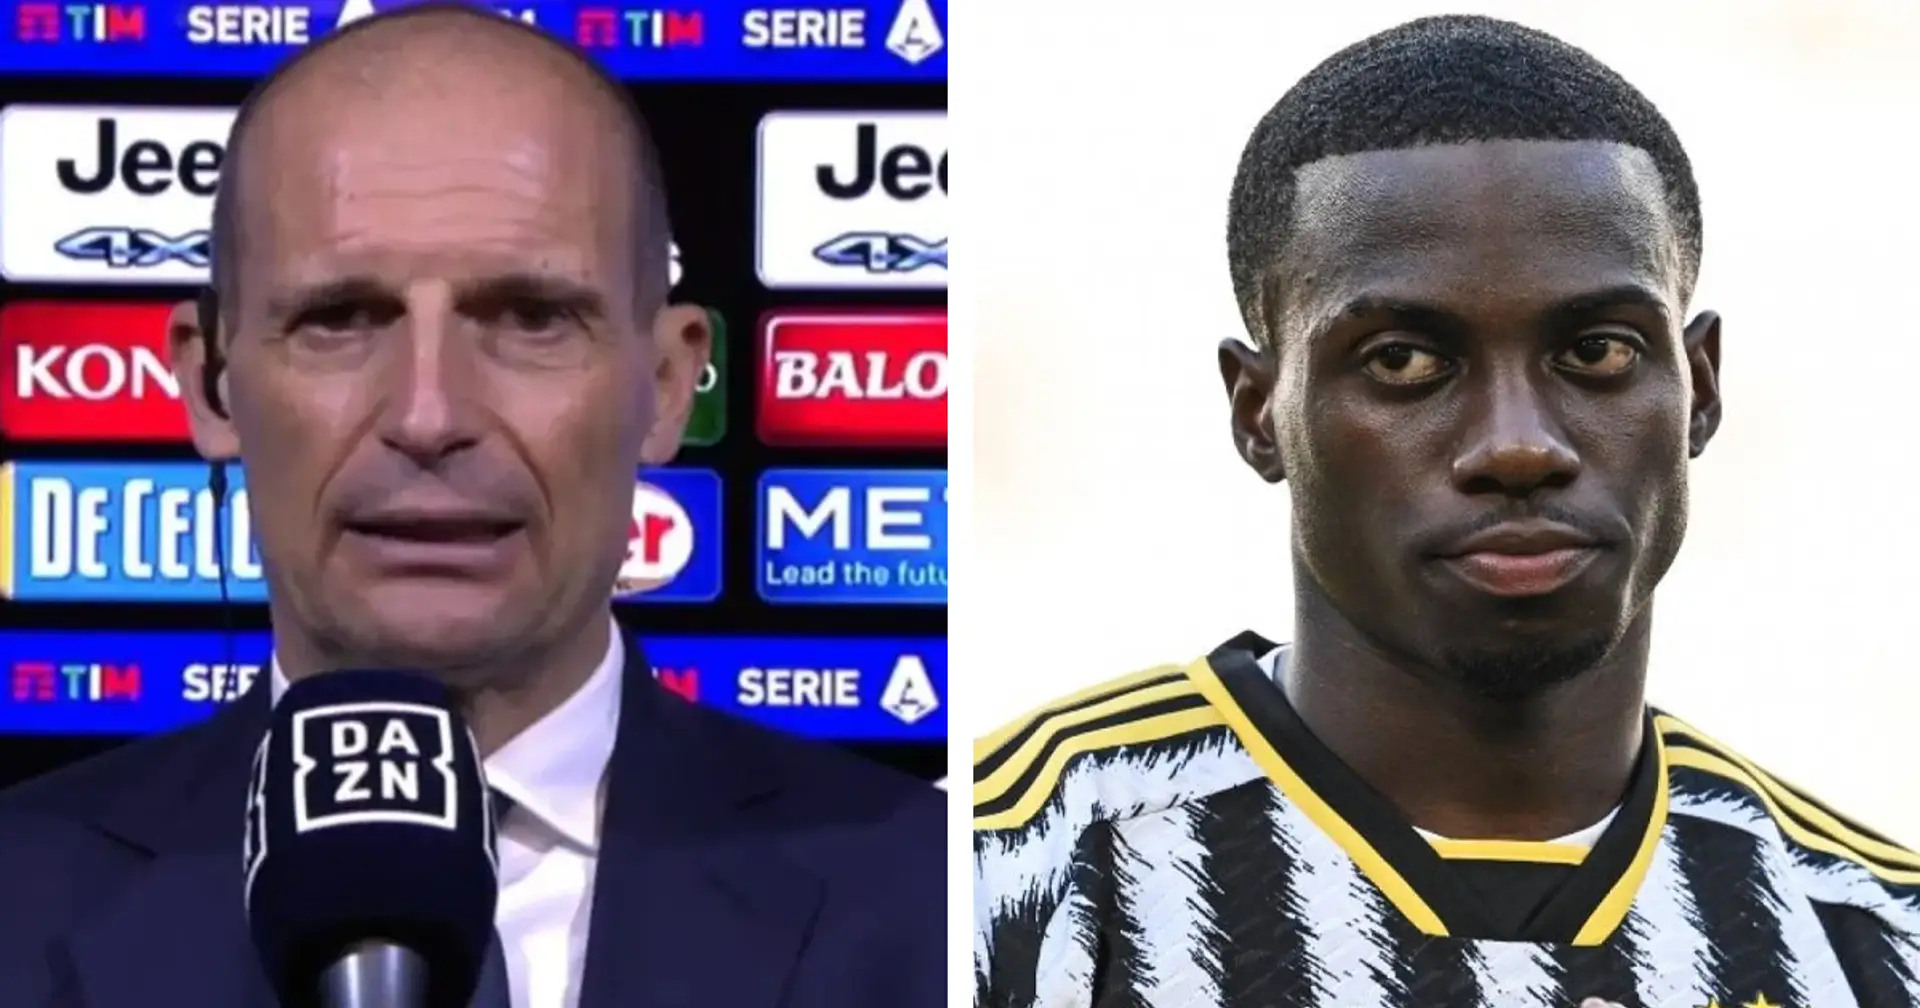 "Oggi serve solo vincere": Allegri spiega le scelte su Yildiz e Weah fatte per Juventus-Empoli